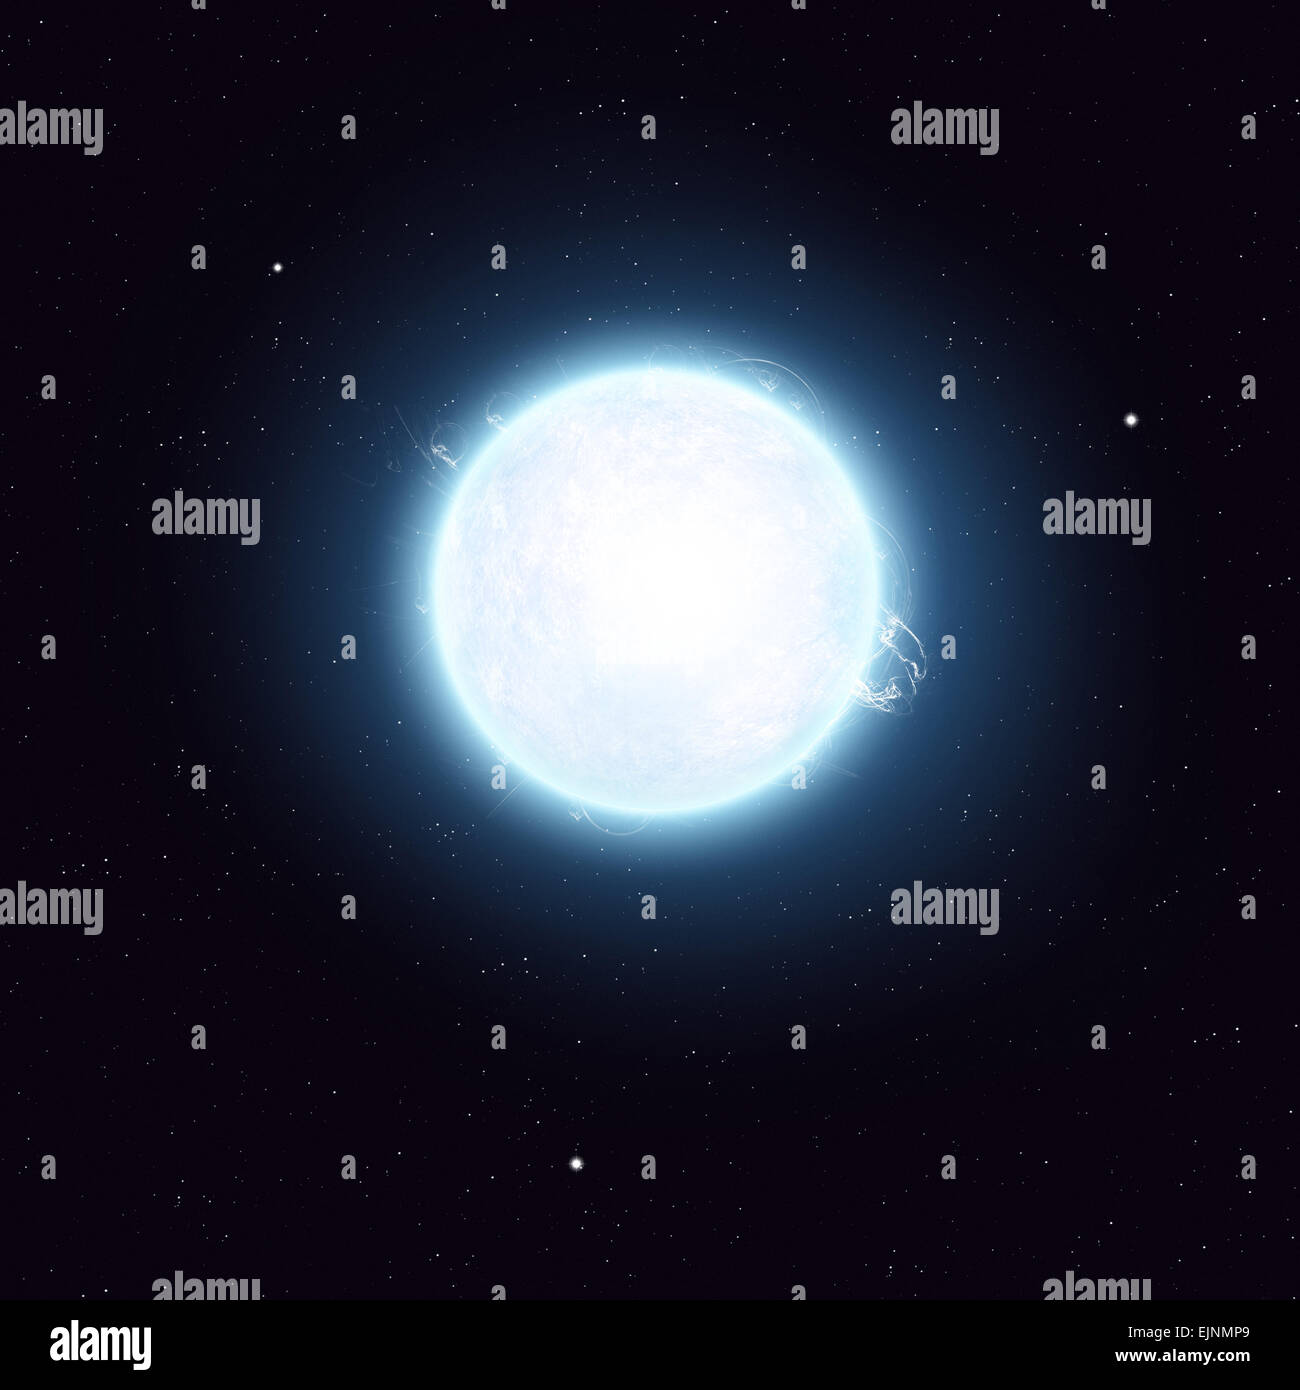 Immaginario spazio solare blue star immagine con stelle e luci Foto Stock